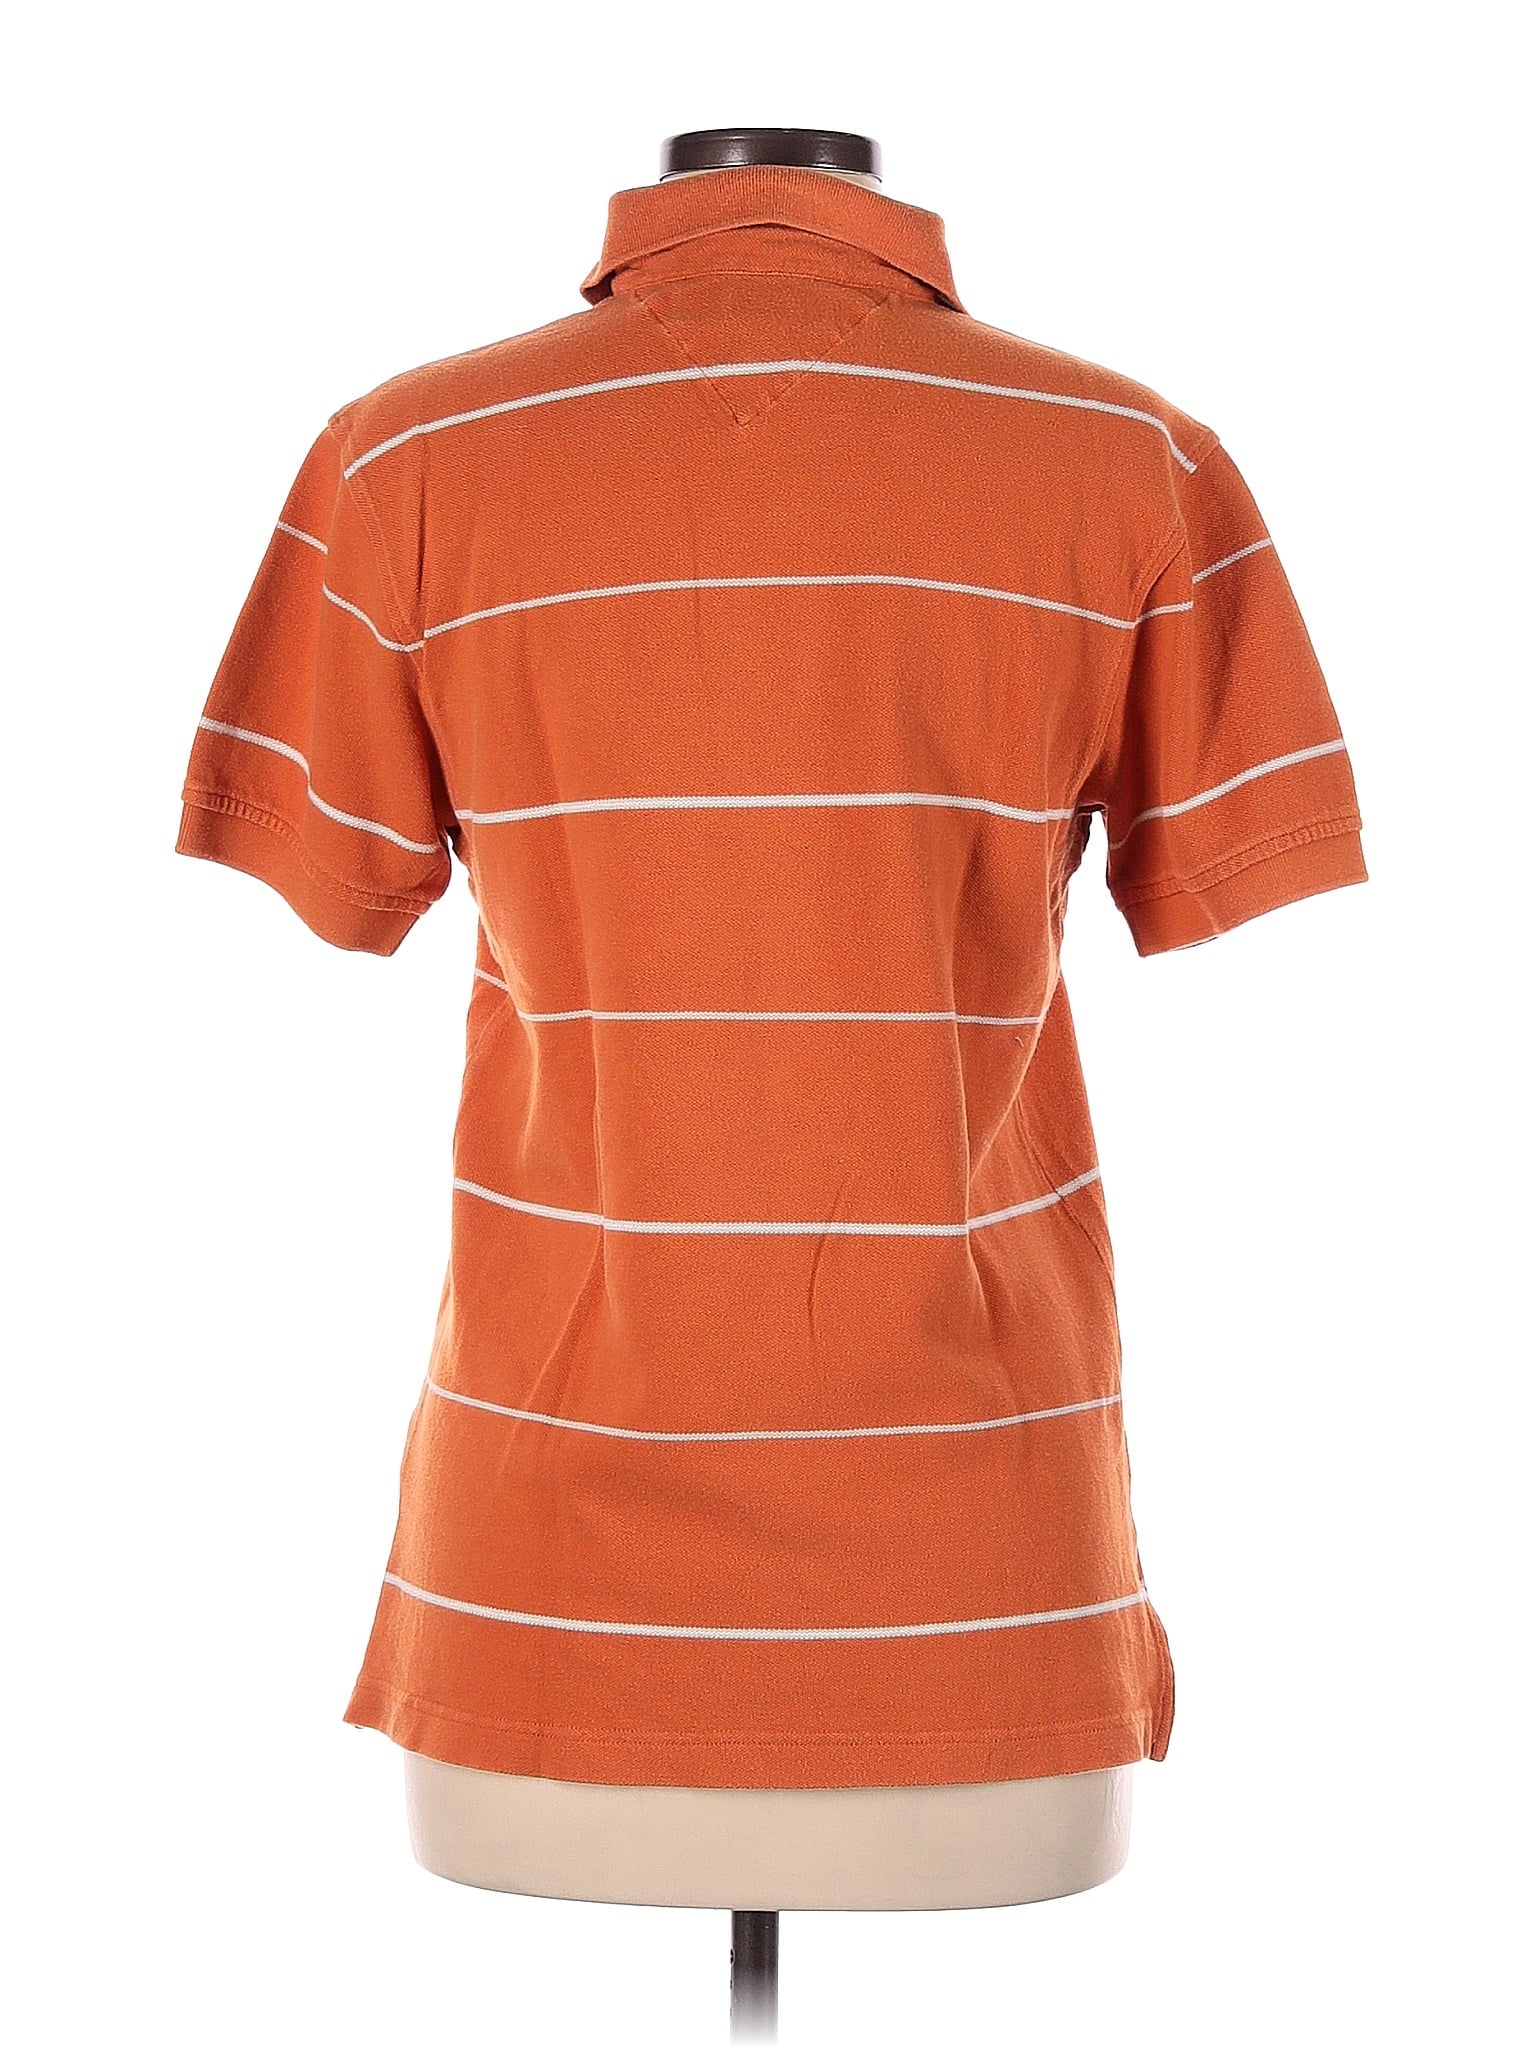 Polo Shirt size - XS